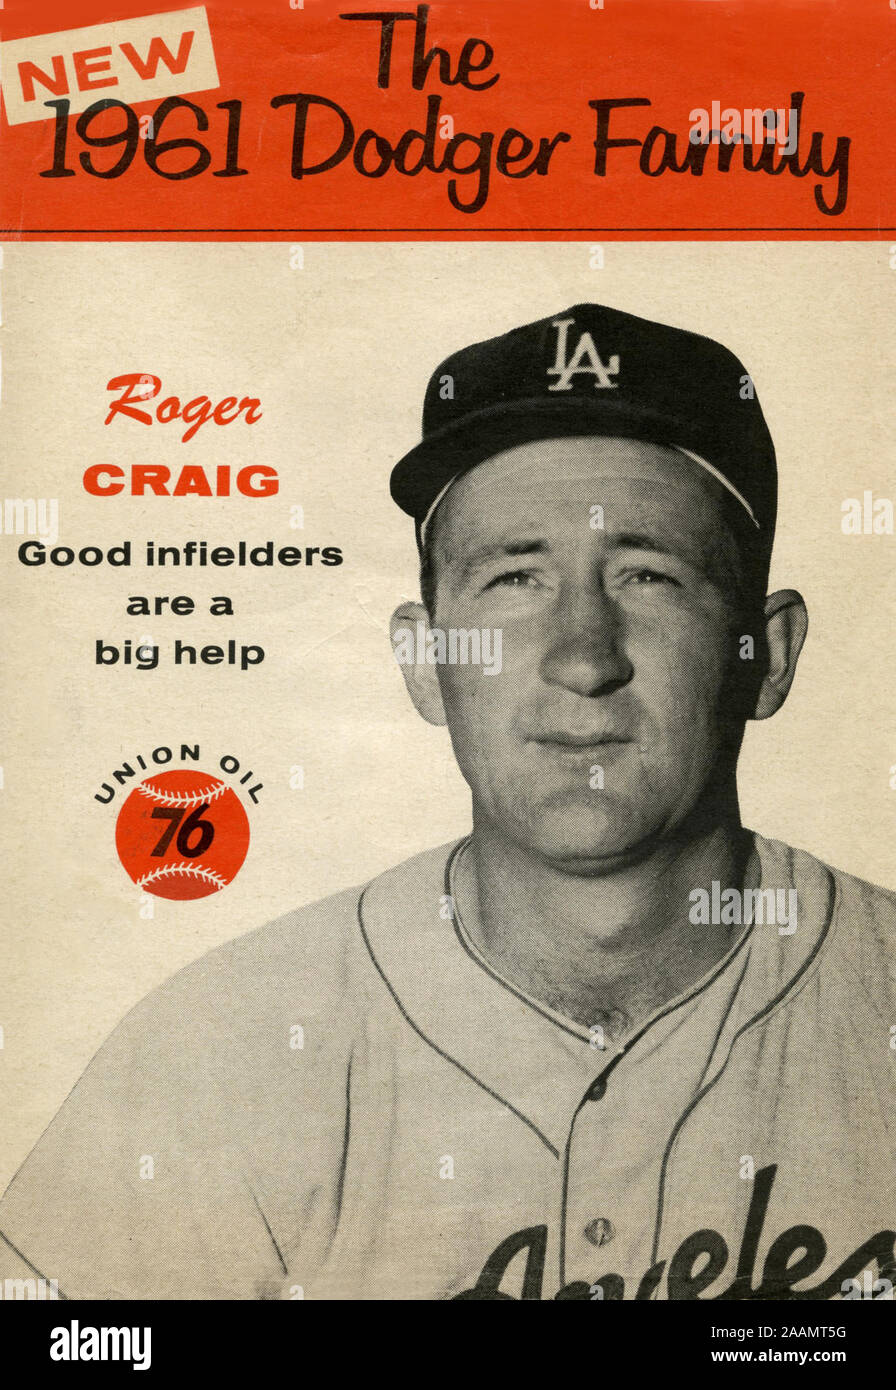 Un souvenir 1961 Dodger Album di famiglia opuscolo sulla brocca Roger Craig è stato distribuito gratuitamente come un premio per i clienti di 76 stazioni di benzina nella zona di Los Angeles. Foto Stock